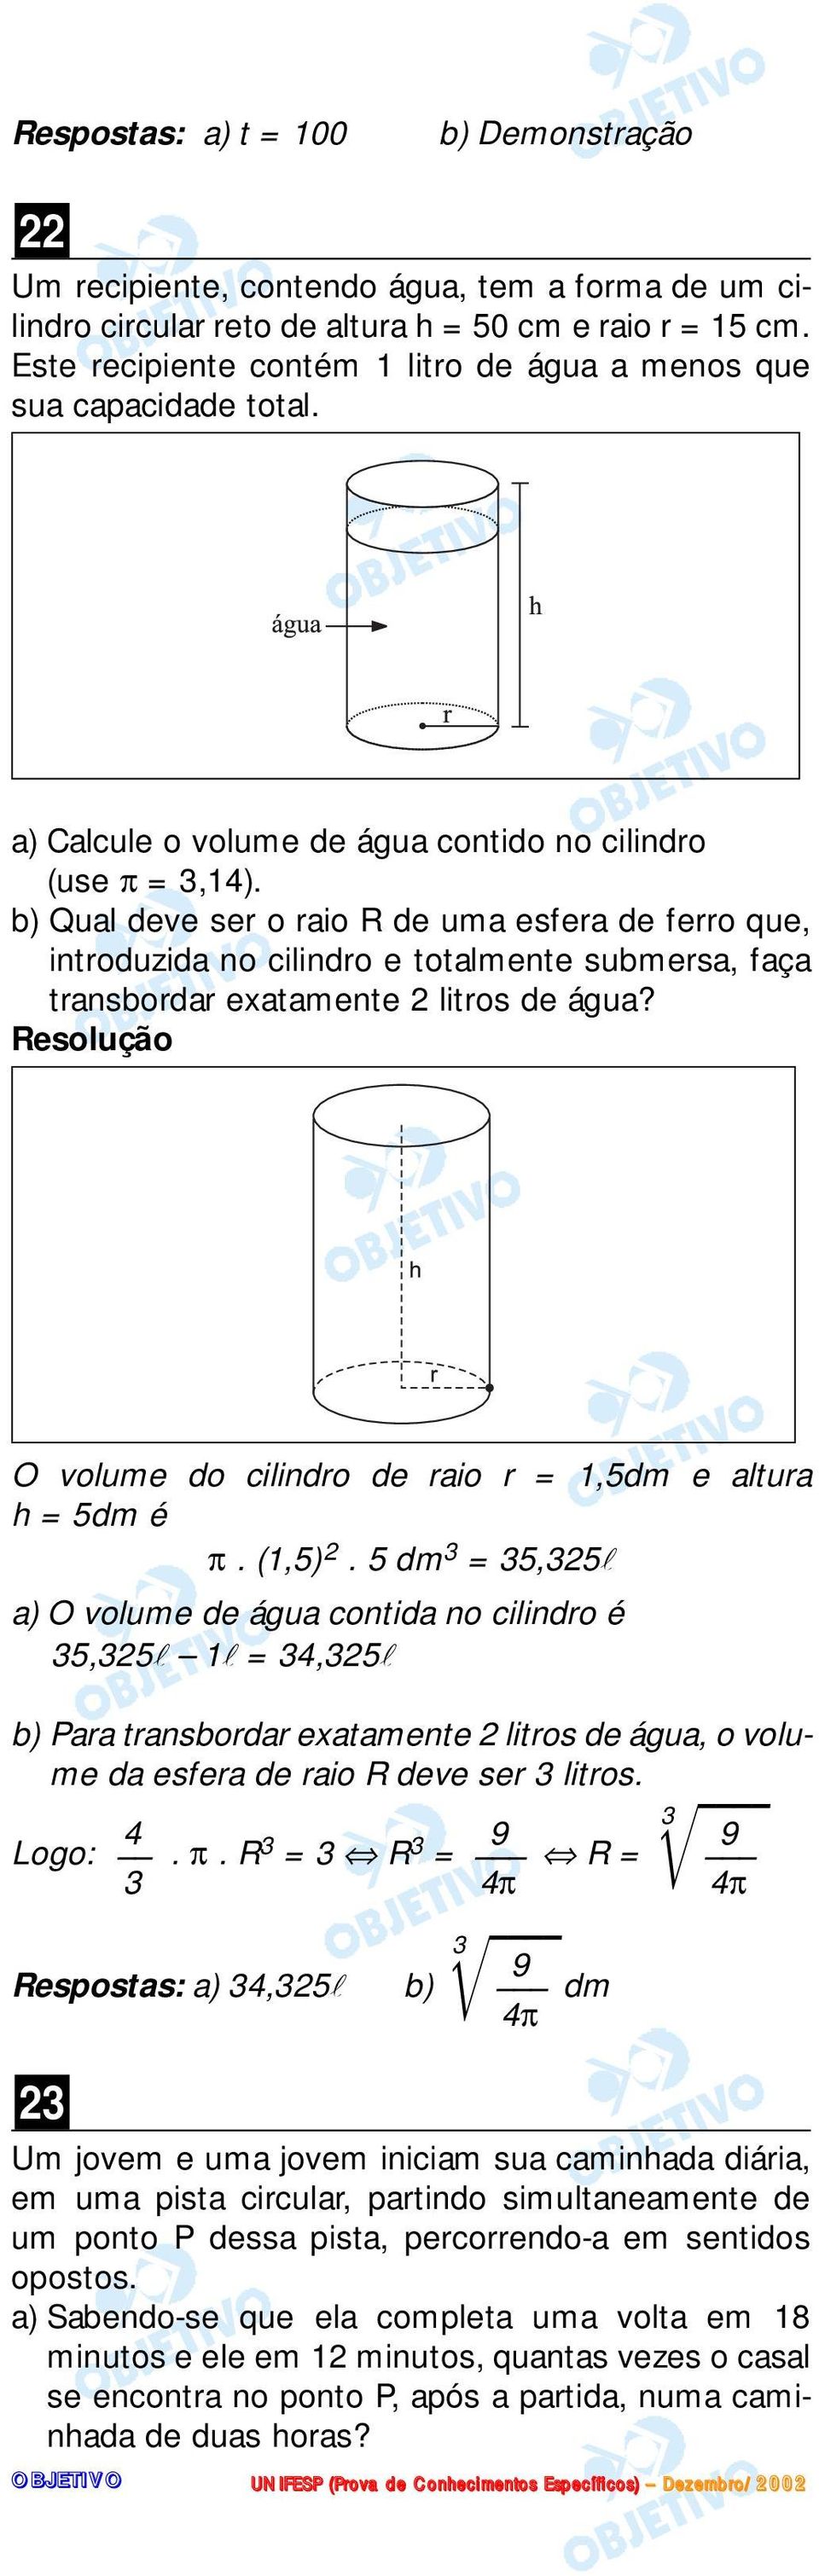 b) Qual deve ser o raio R de uma esfera de ferro que, introduzida no cilindro e totalmente submersa, faça transbordar exatamente litros de água?